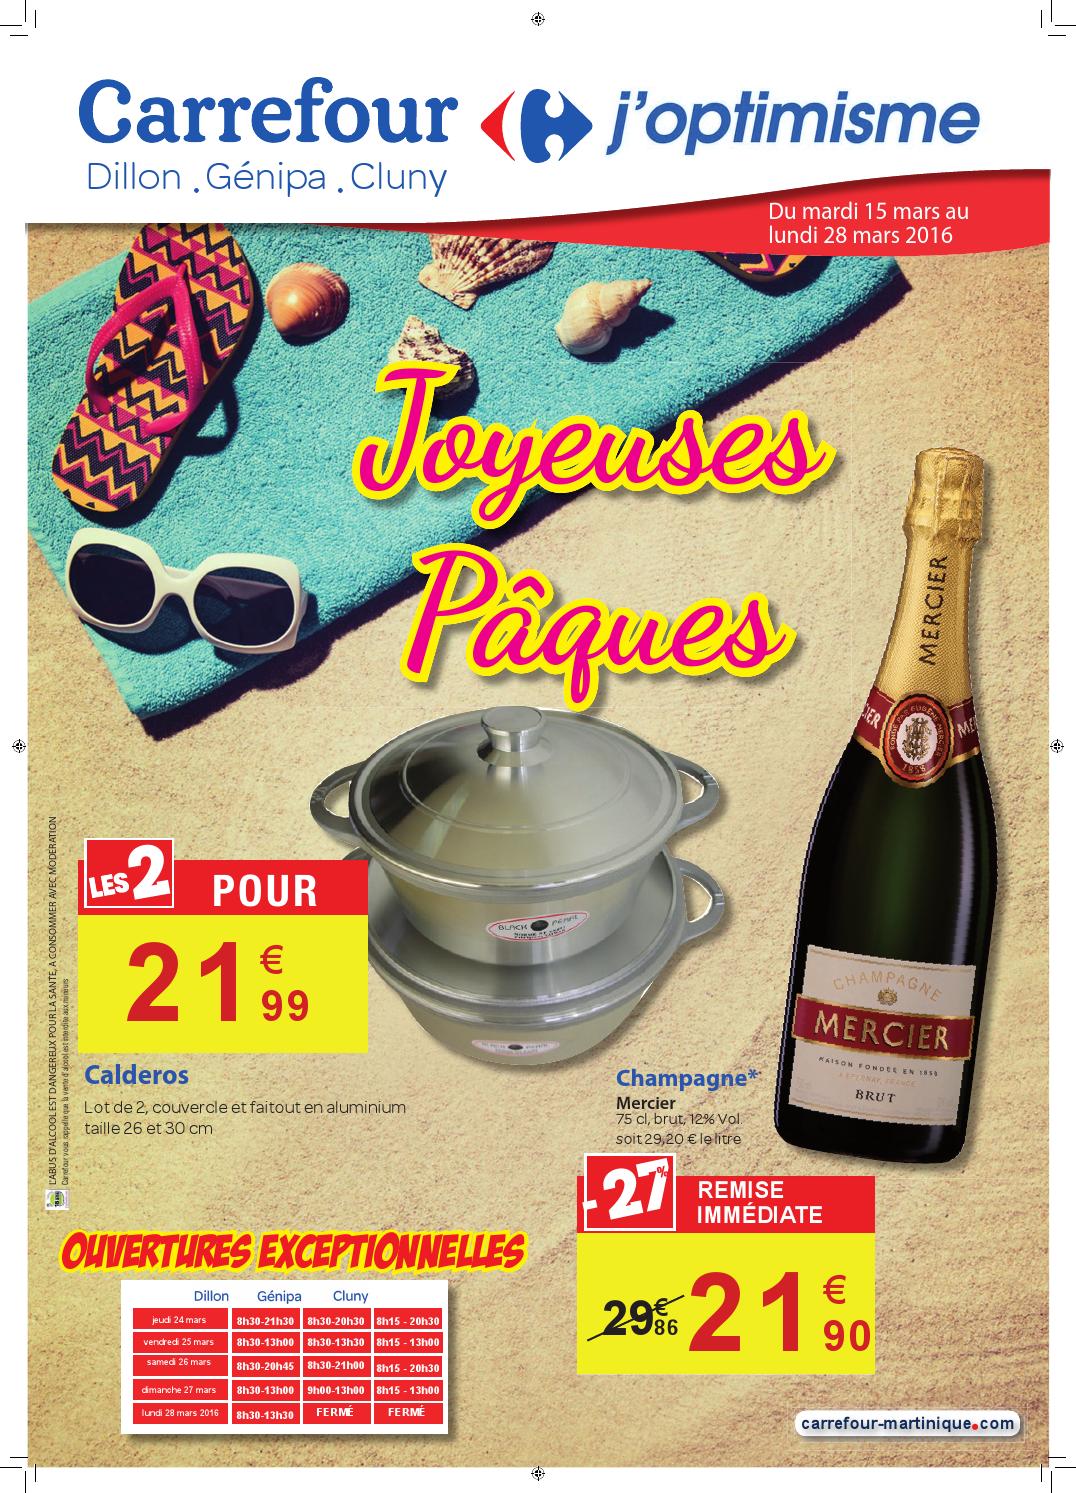 Salon De Jardin Resine Carrefour Best Of Carrefour Joyeuses P¢ques Du 15 Au 28 Mars 2016 by